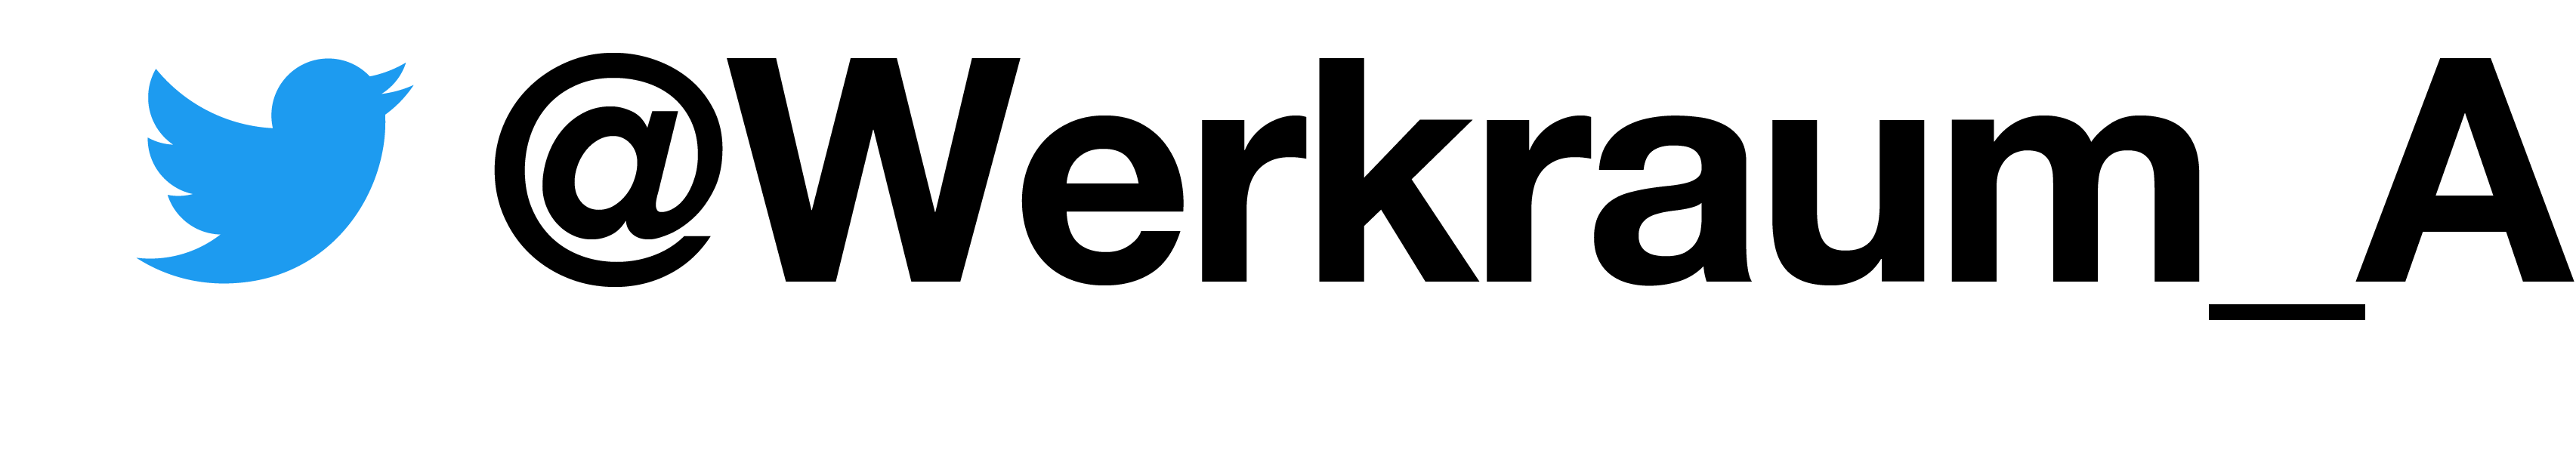 Logo Twitter, Link zu Werkraum_A